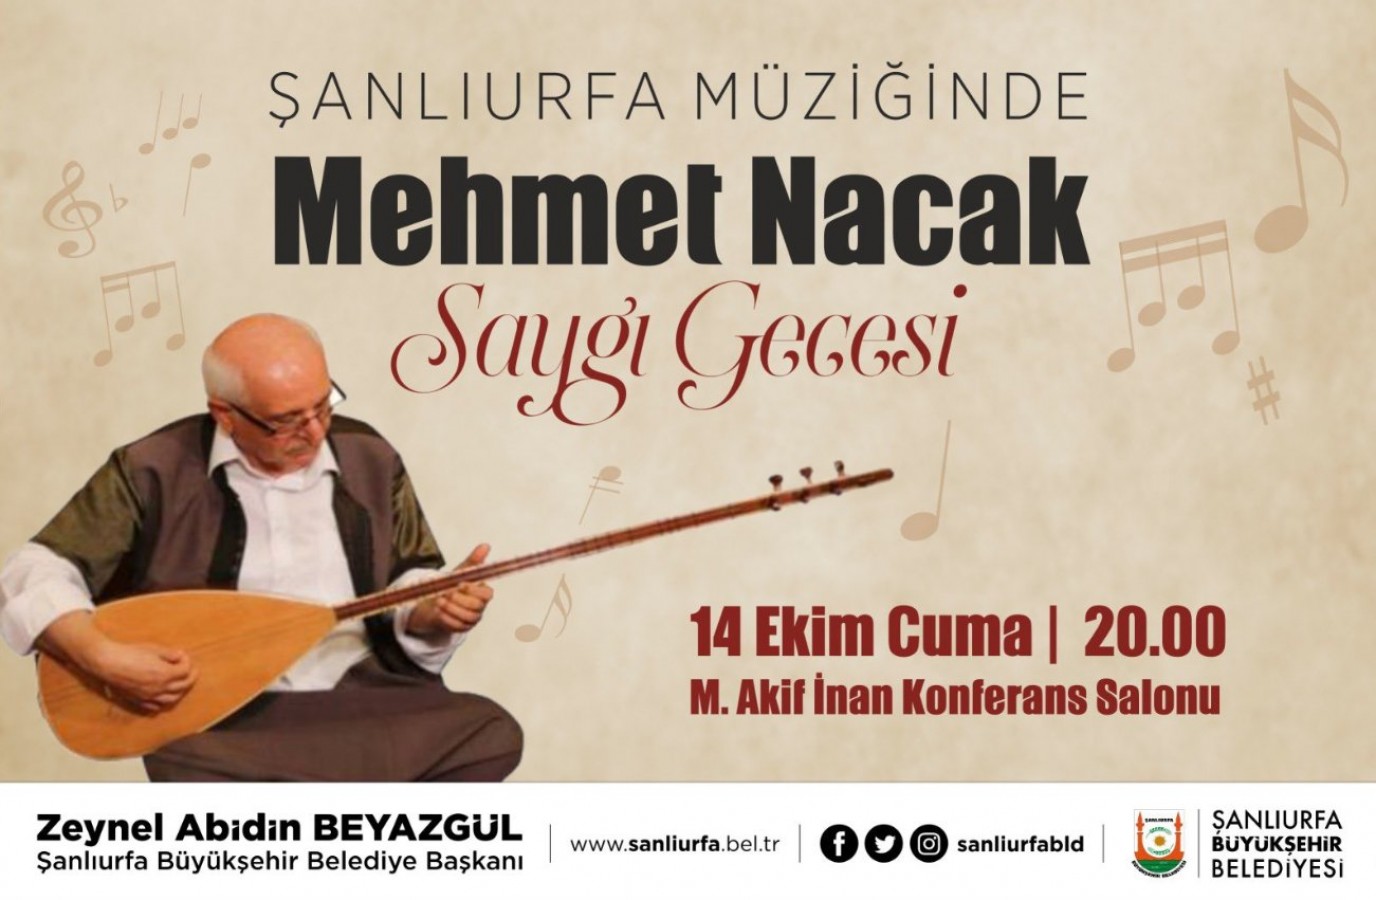 Büyükşehir’den  Mehmet Nacak’a saygı gecesi;